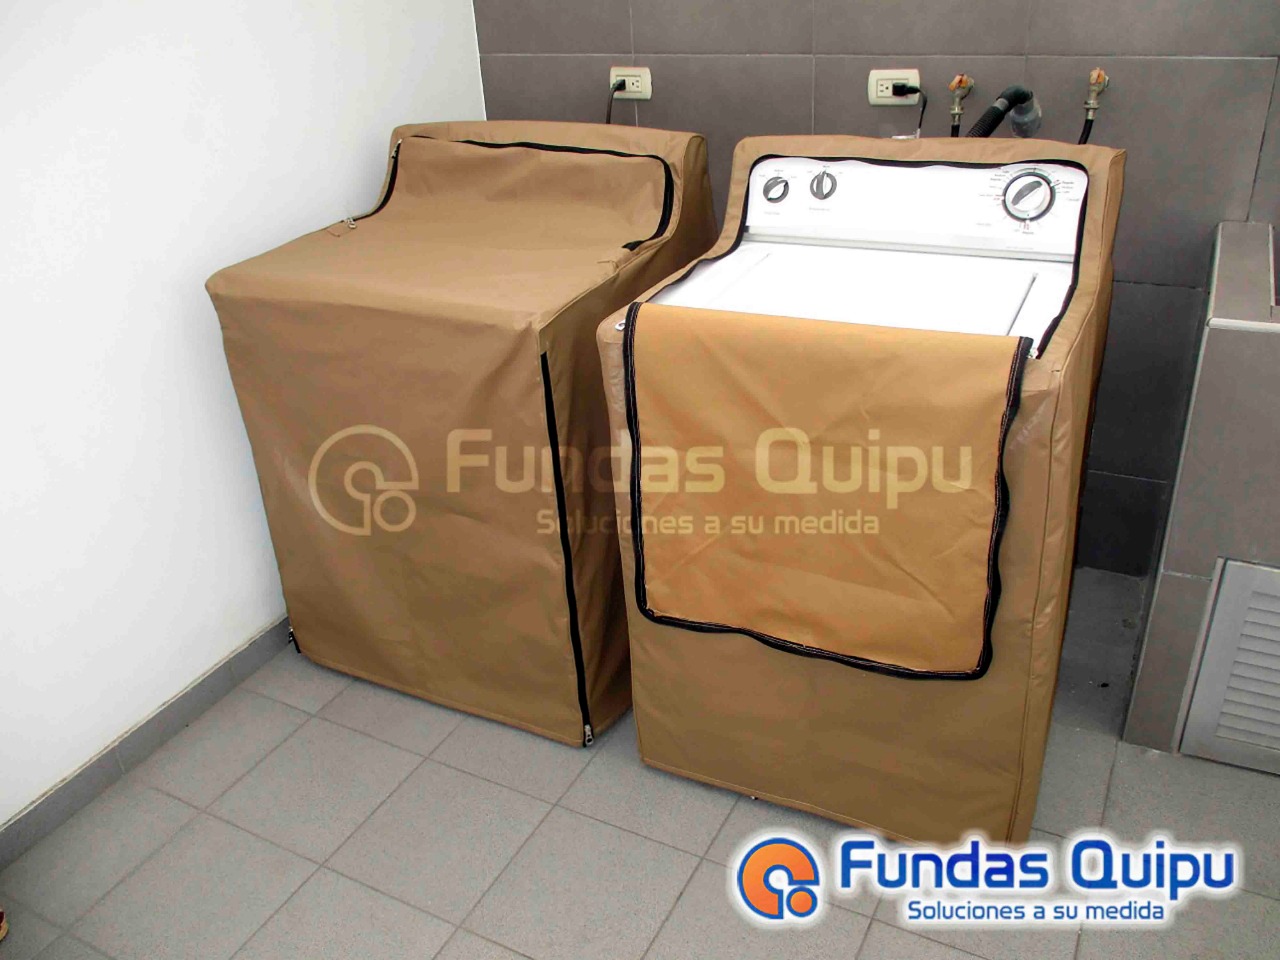 Descriptivo Meandro proteger Fundas para lavadora, secadora y centro de lavado. Perú. Extra durable.  garantía de por vida. | Fundas Quipu - Perú - Fundas y cobertores de alta  calidad